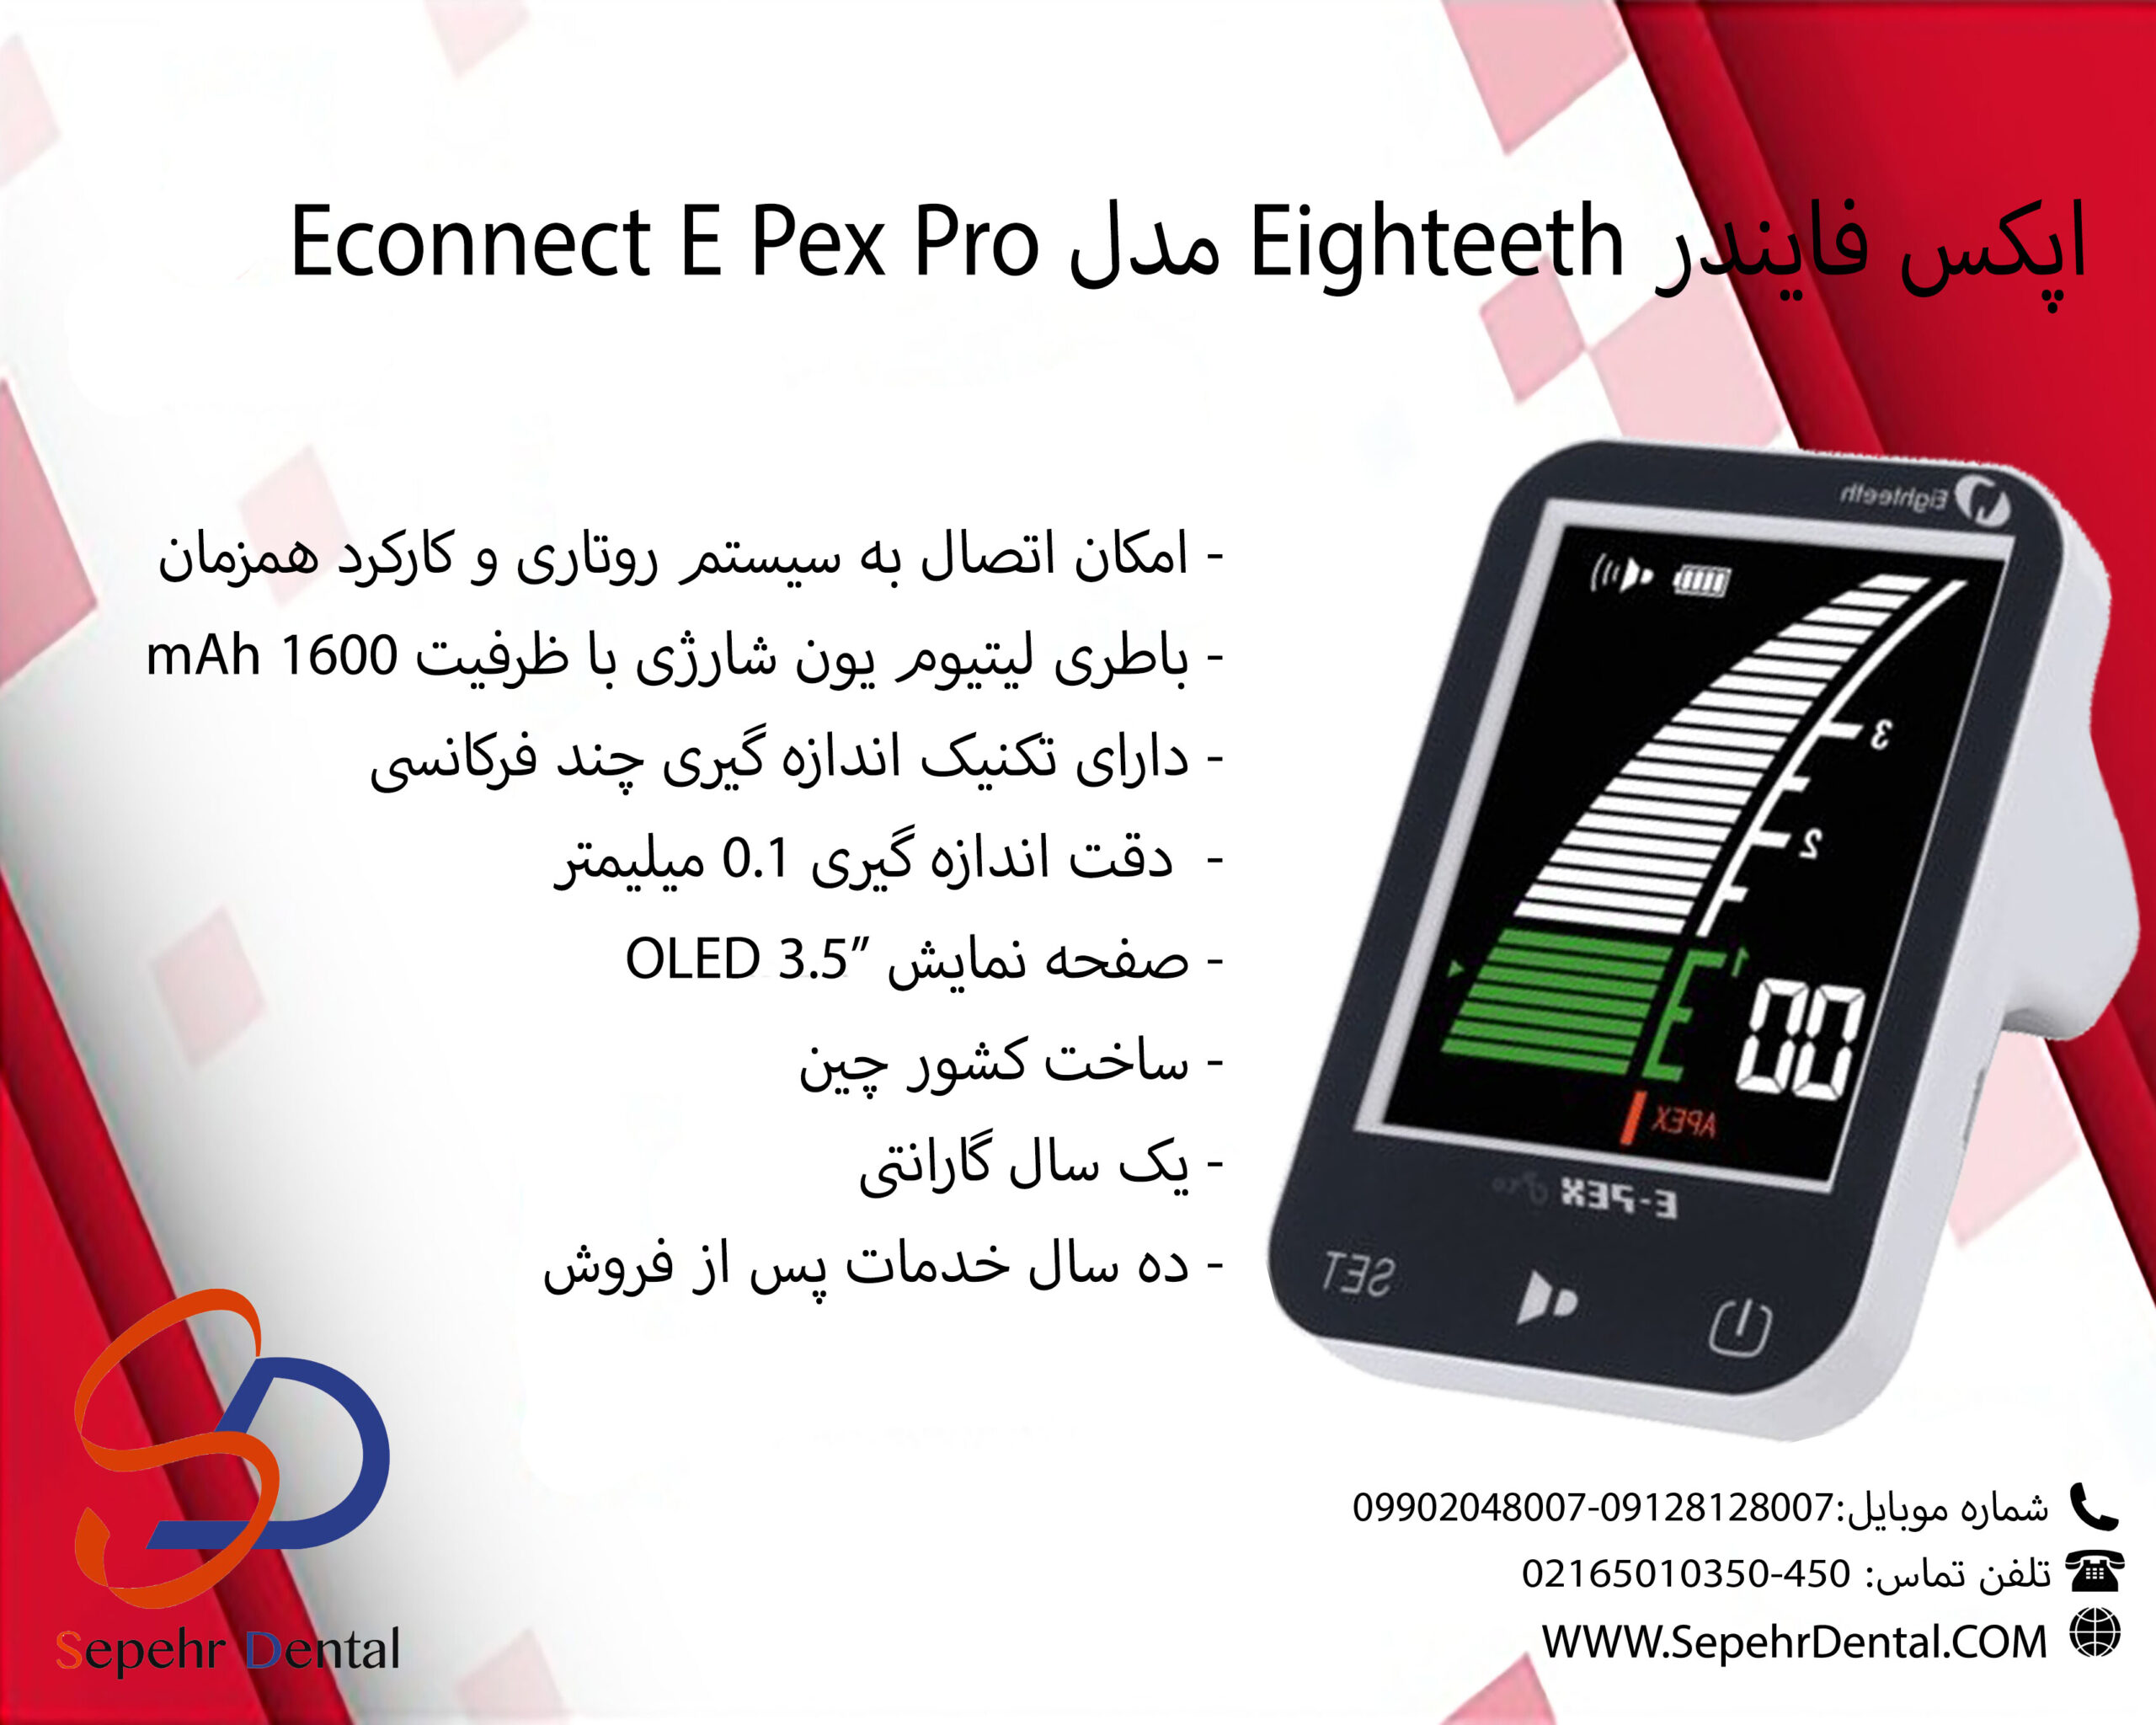 اپکس فایندر ایتیس Eighteeth مدل Econnect E Pex Pro